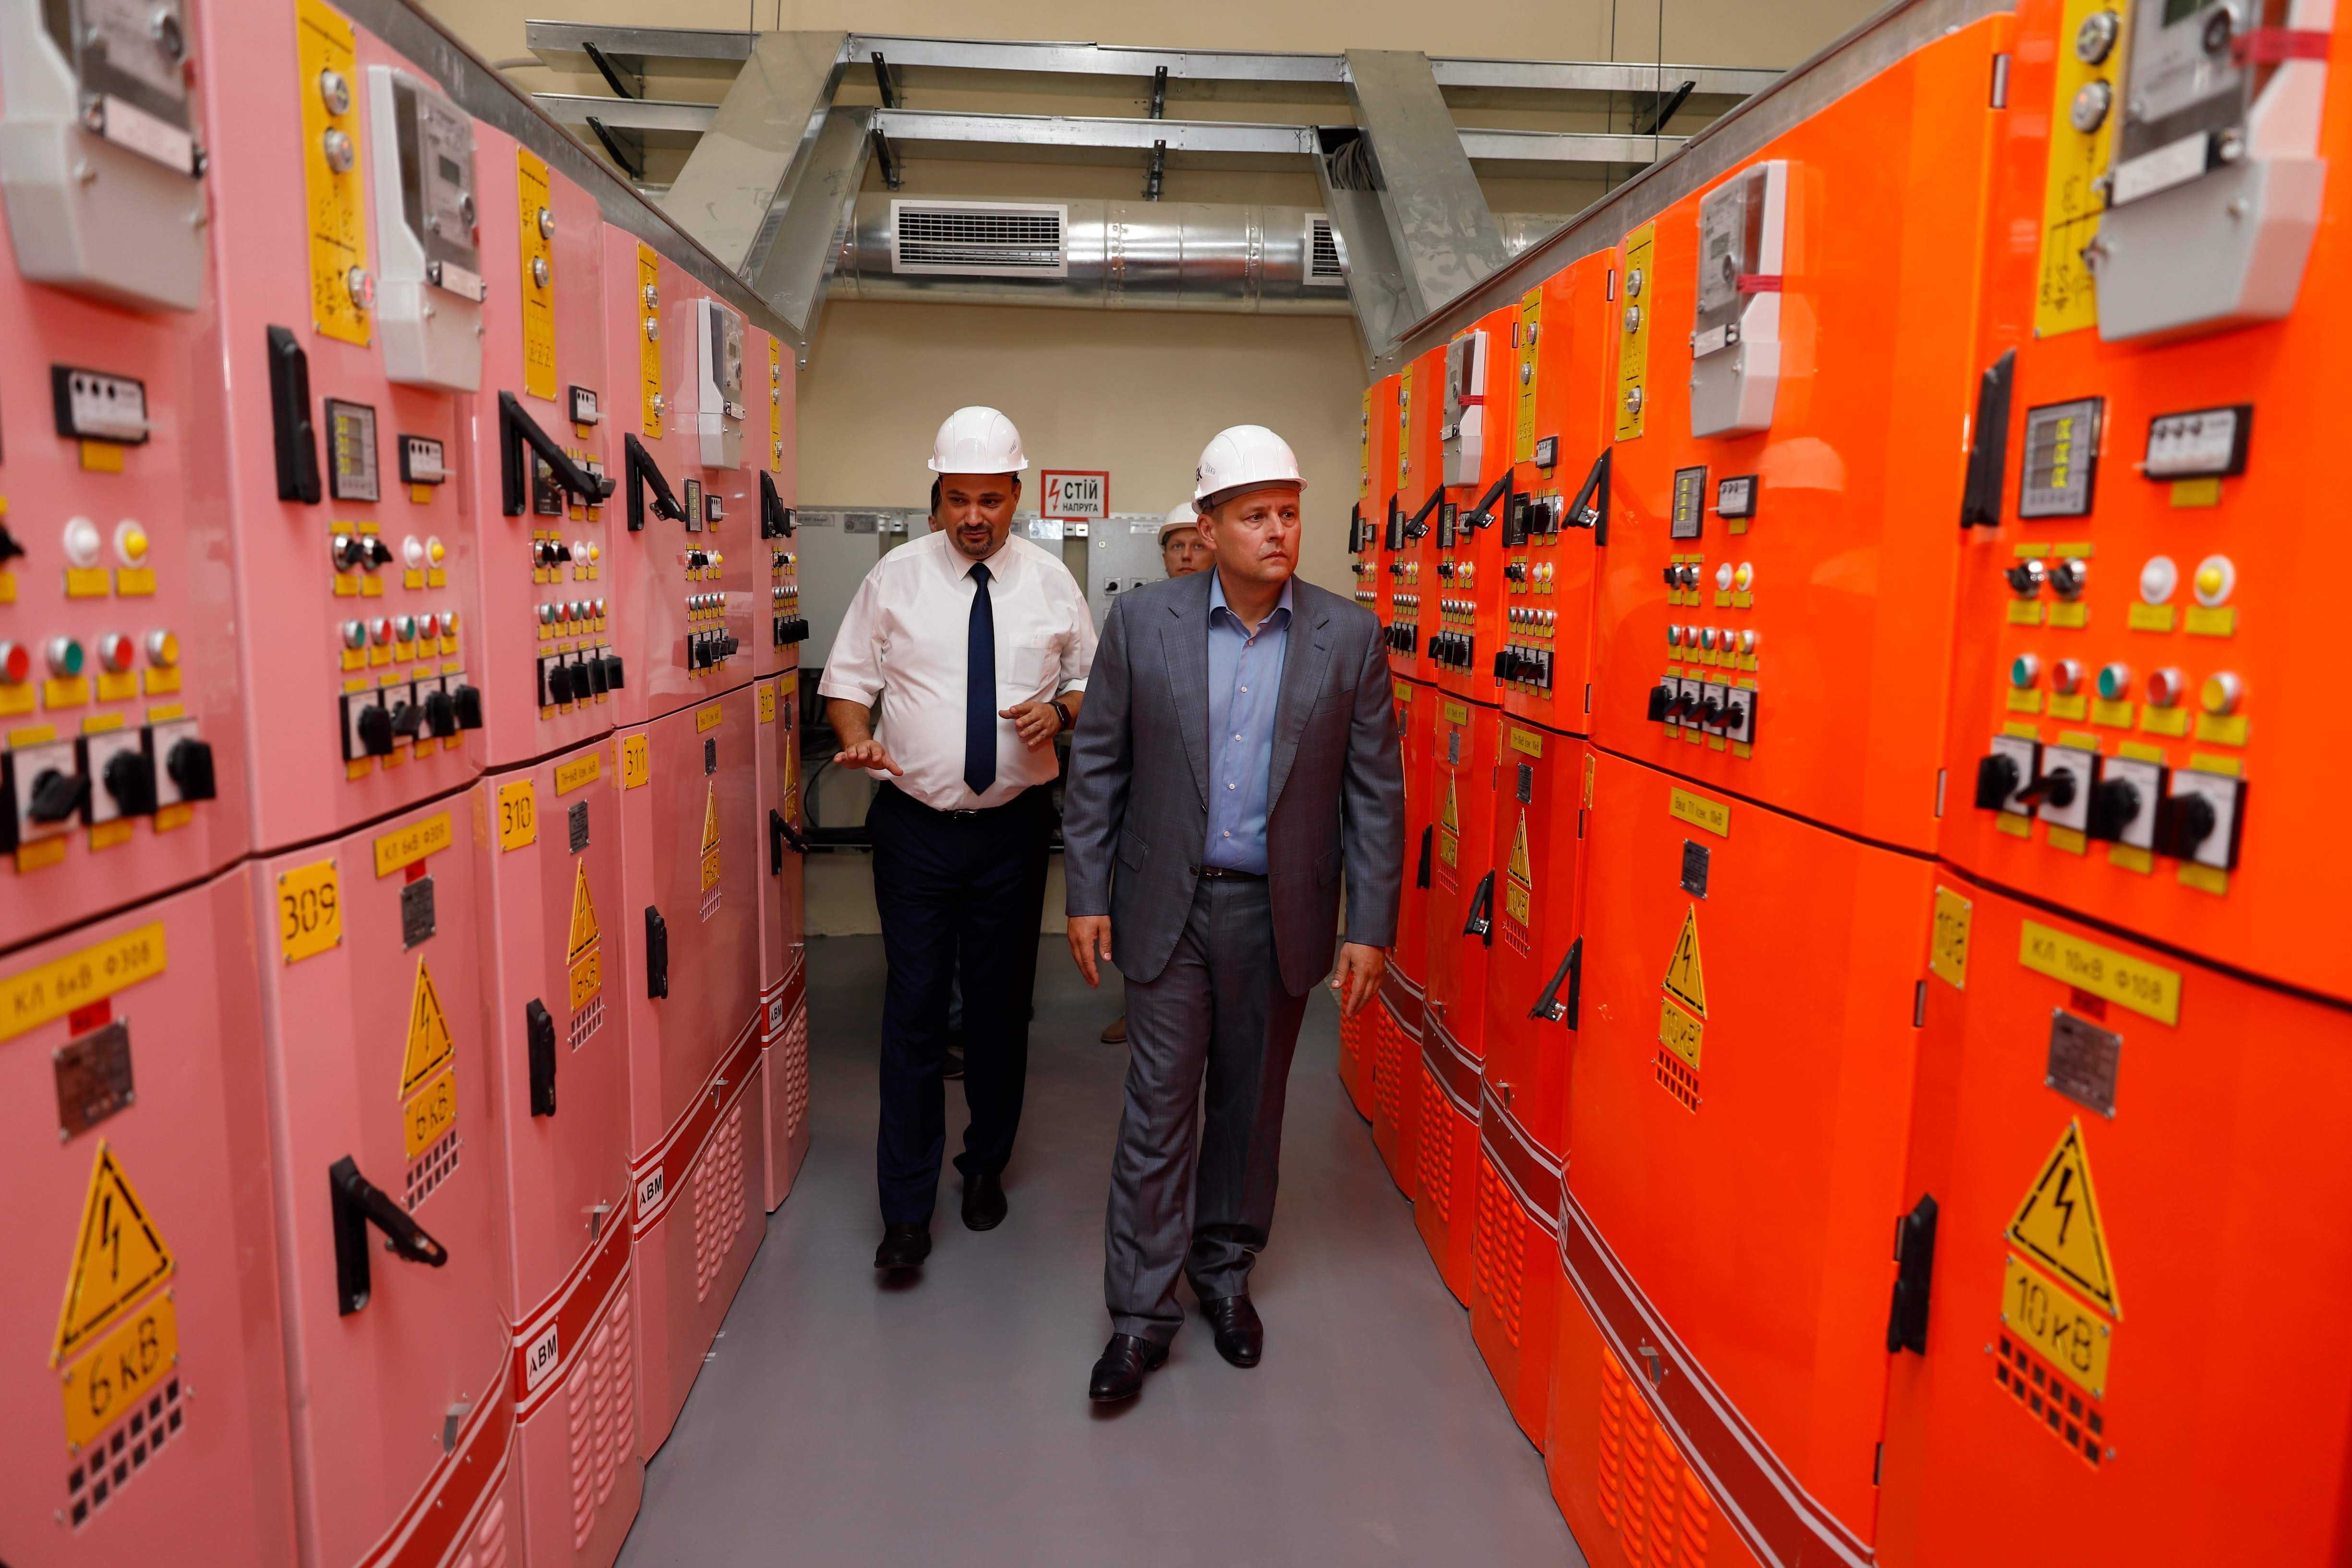 Новость - События - Борис Филатов поучаствовал в запуске подстанции "Надднепрянская", которую называют одним из самых современных энергообъектов в Украине